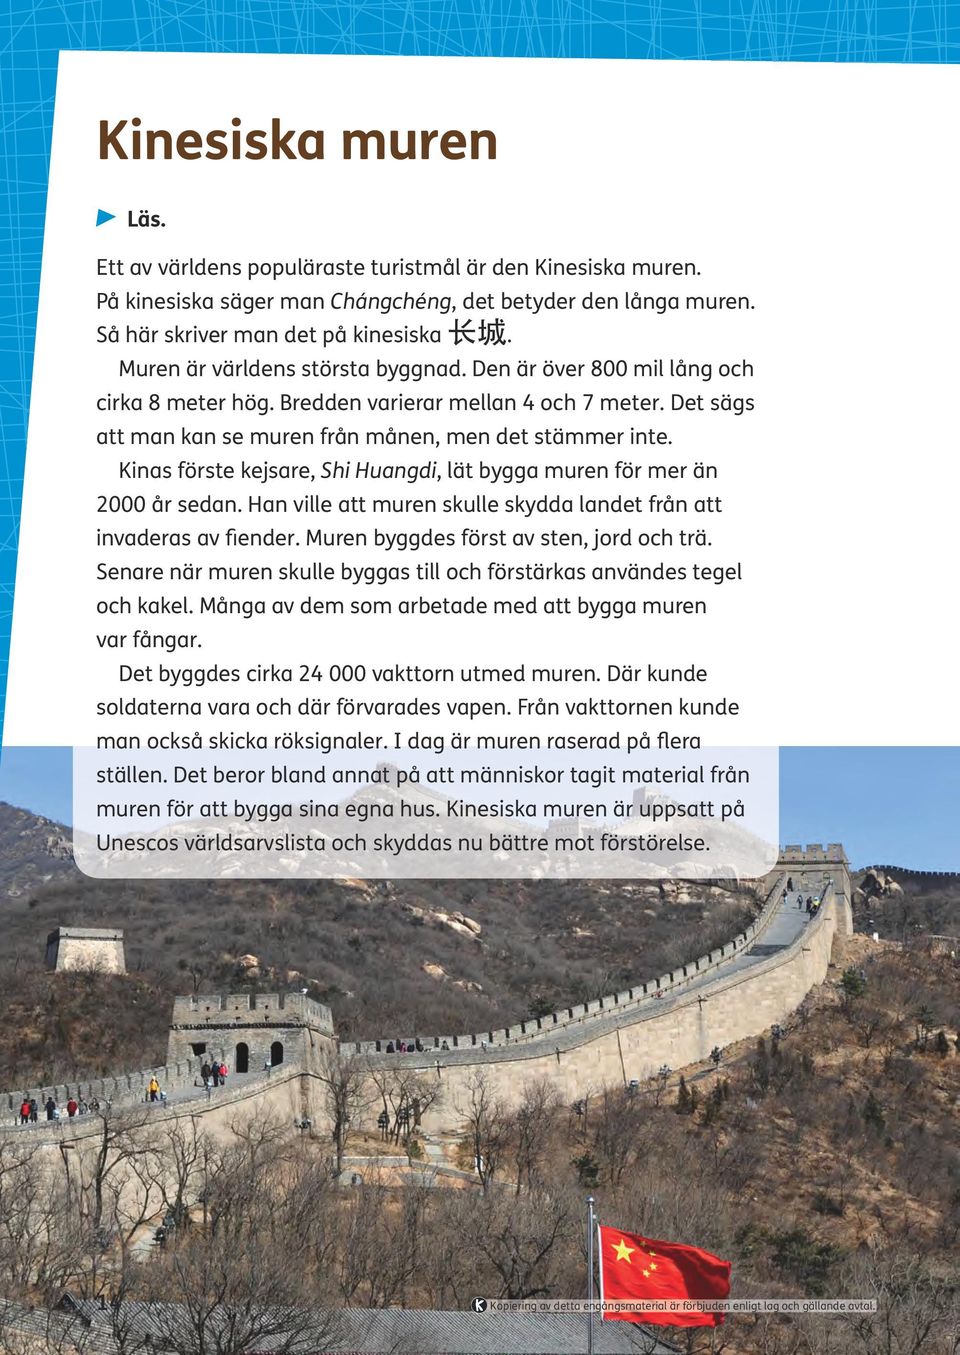 Kinas förste kejsare, Shi Huangdi, lät bygga muren för mer än 2000 år sedan. Han ville att muren skulle skydda landet från att invaderas av fiender. Muren byggdes först av sten, jord och trä.